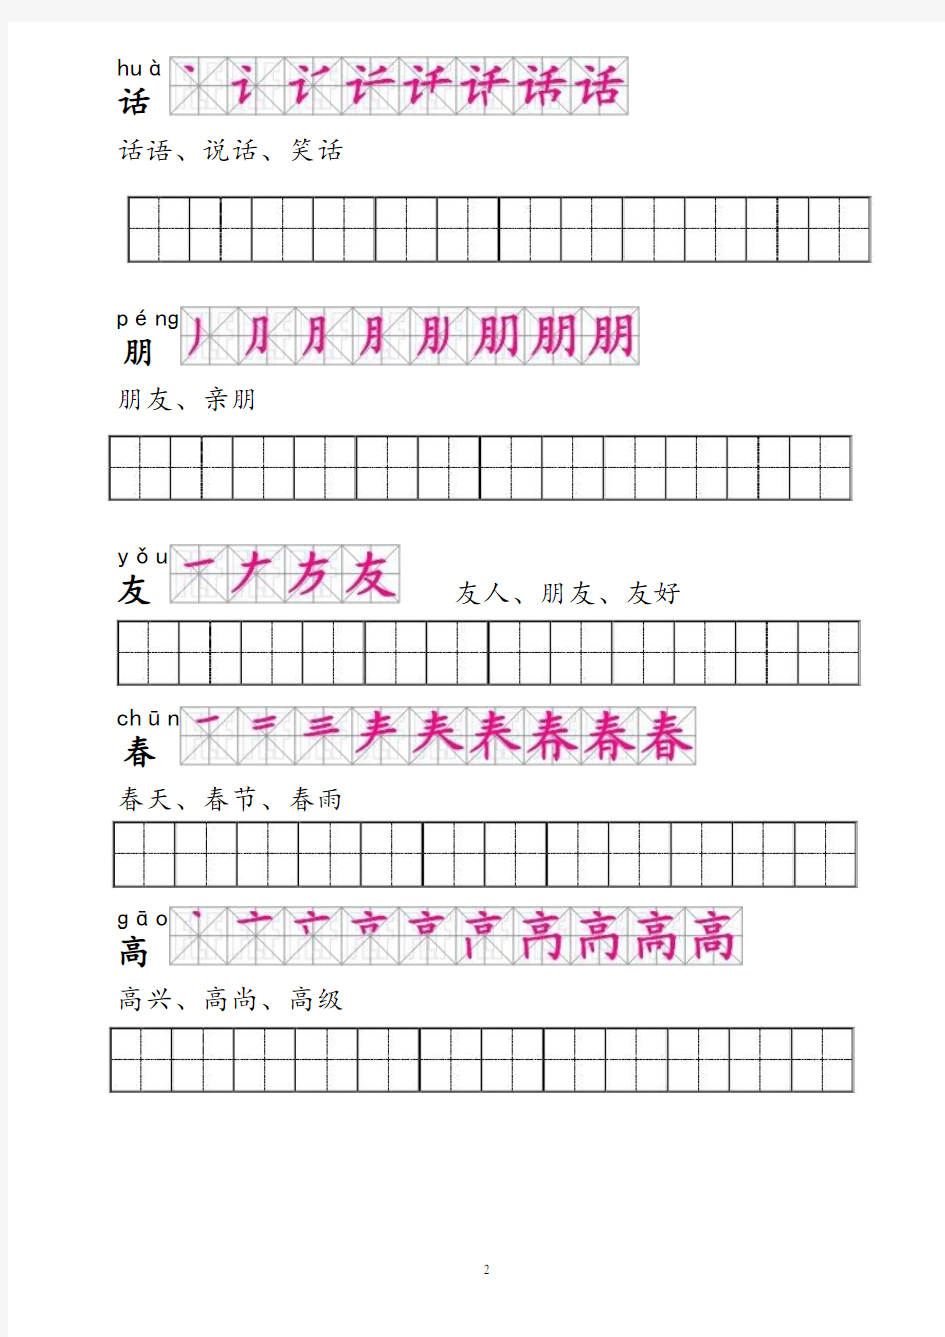 人教版一年级语文下册生字描红(笔顺、音、词练习)--附整理好格式练习田字格A4纸打印